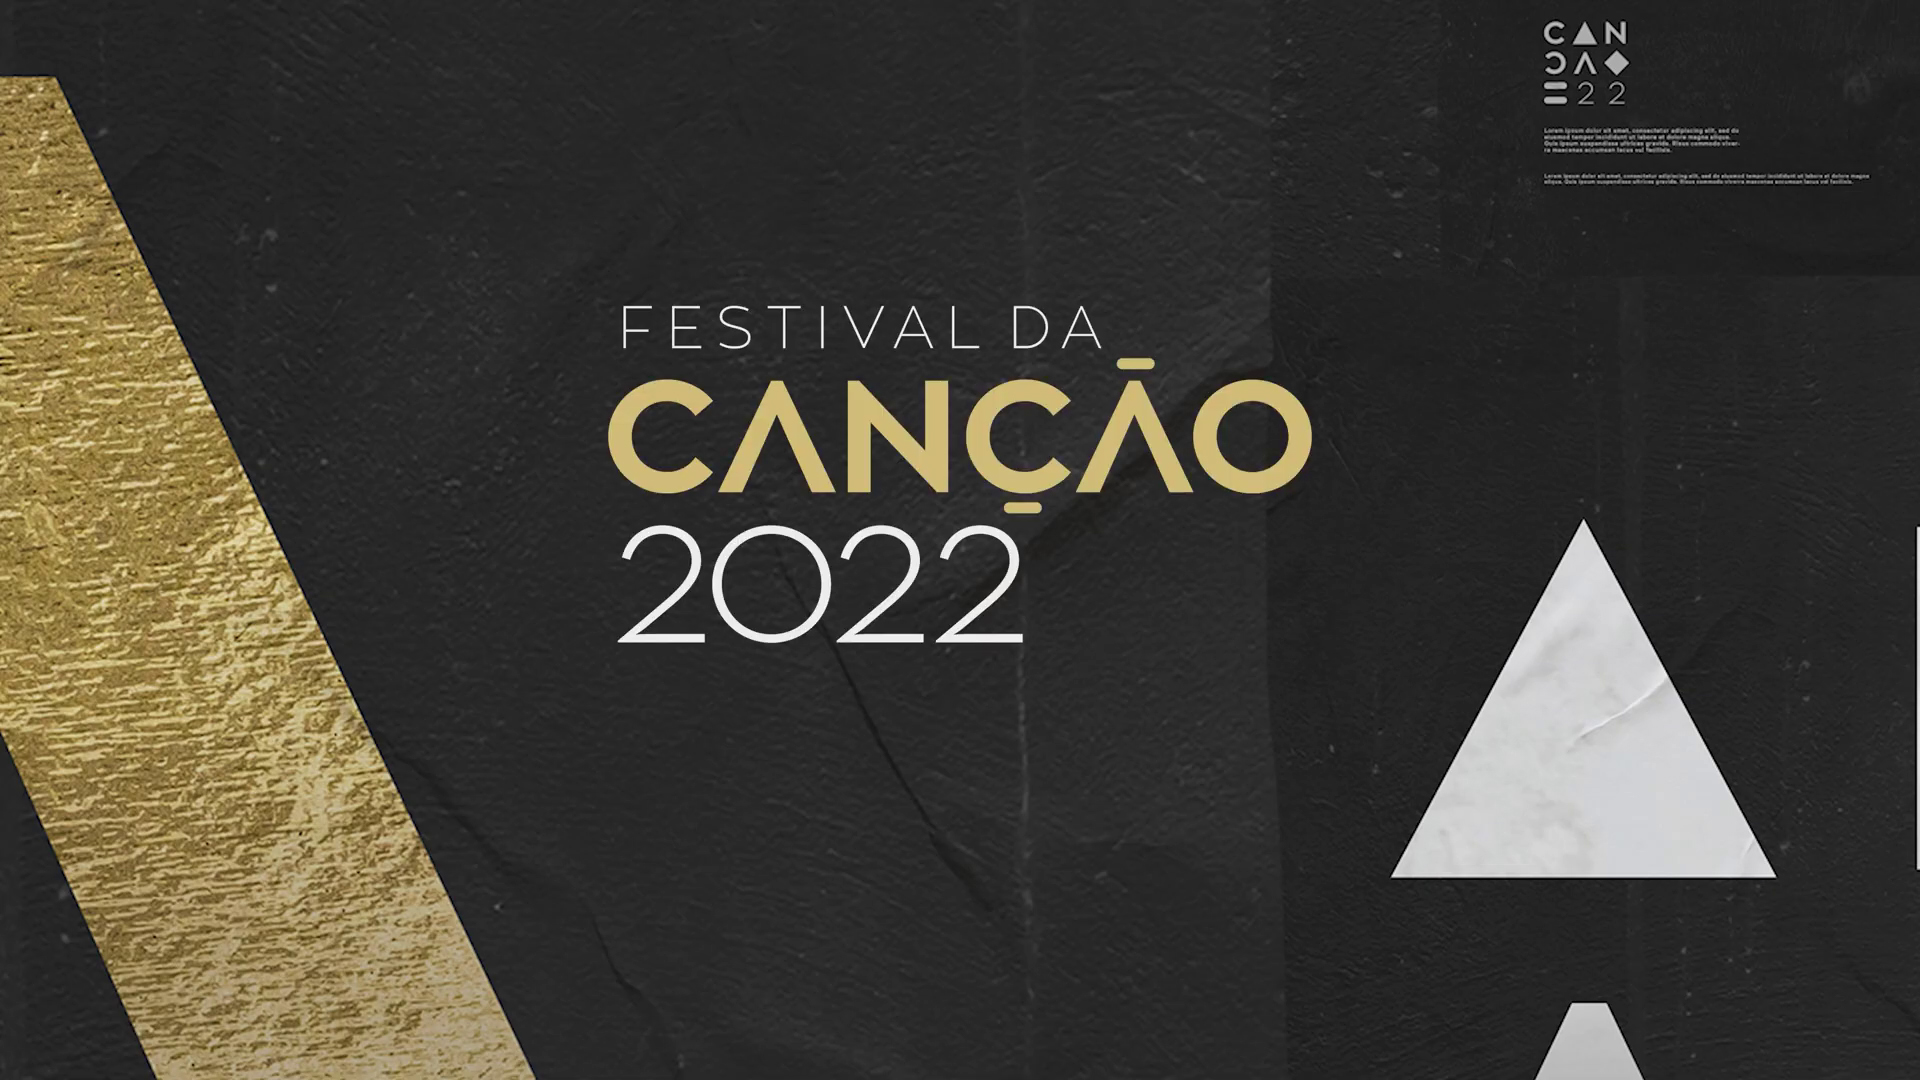 Portugal elige sus últimos 5 finalistas del Festival da Canção 2022